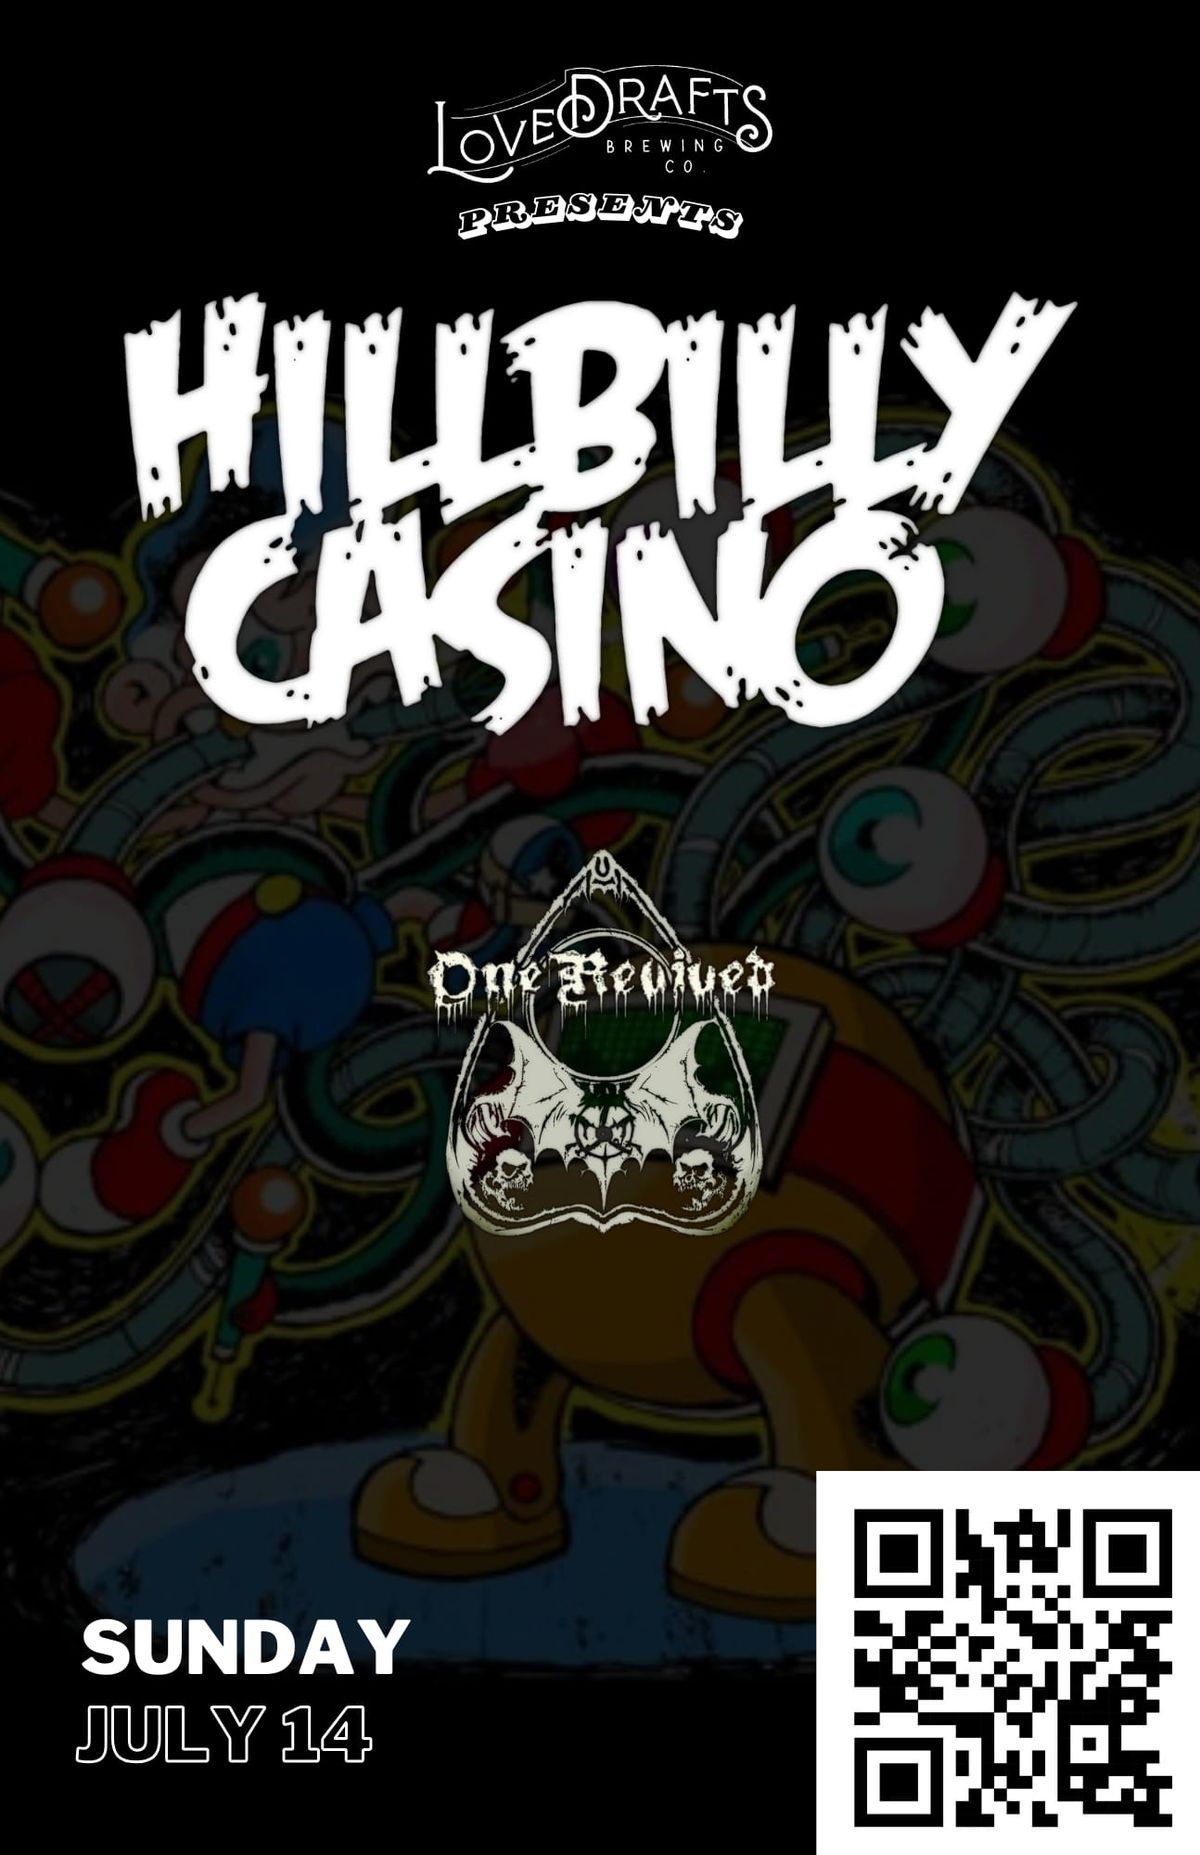 Hillbilly Casino at Lovedraft's Brewing Co